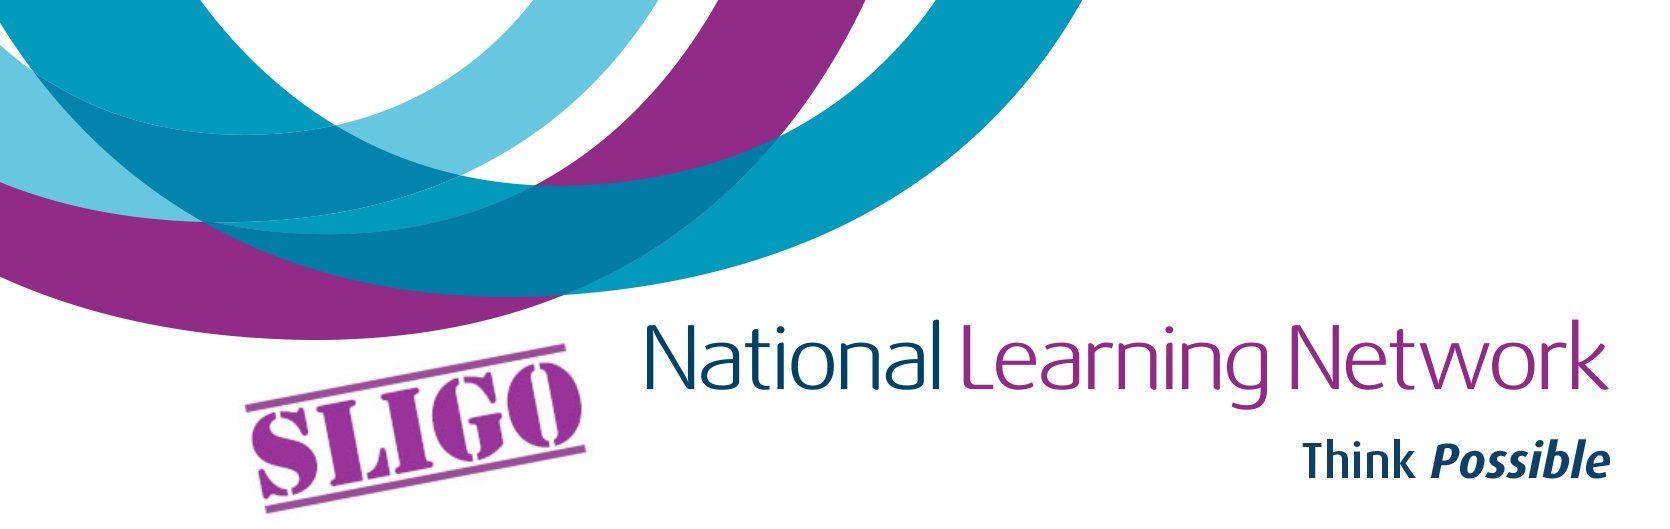 National Learning Network Logo Free Training